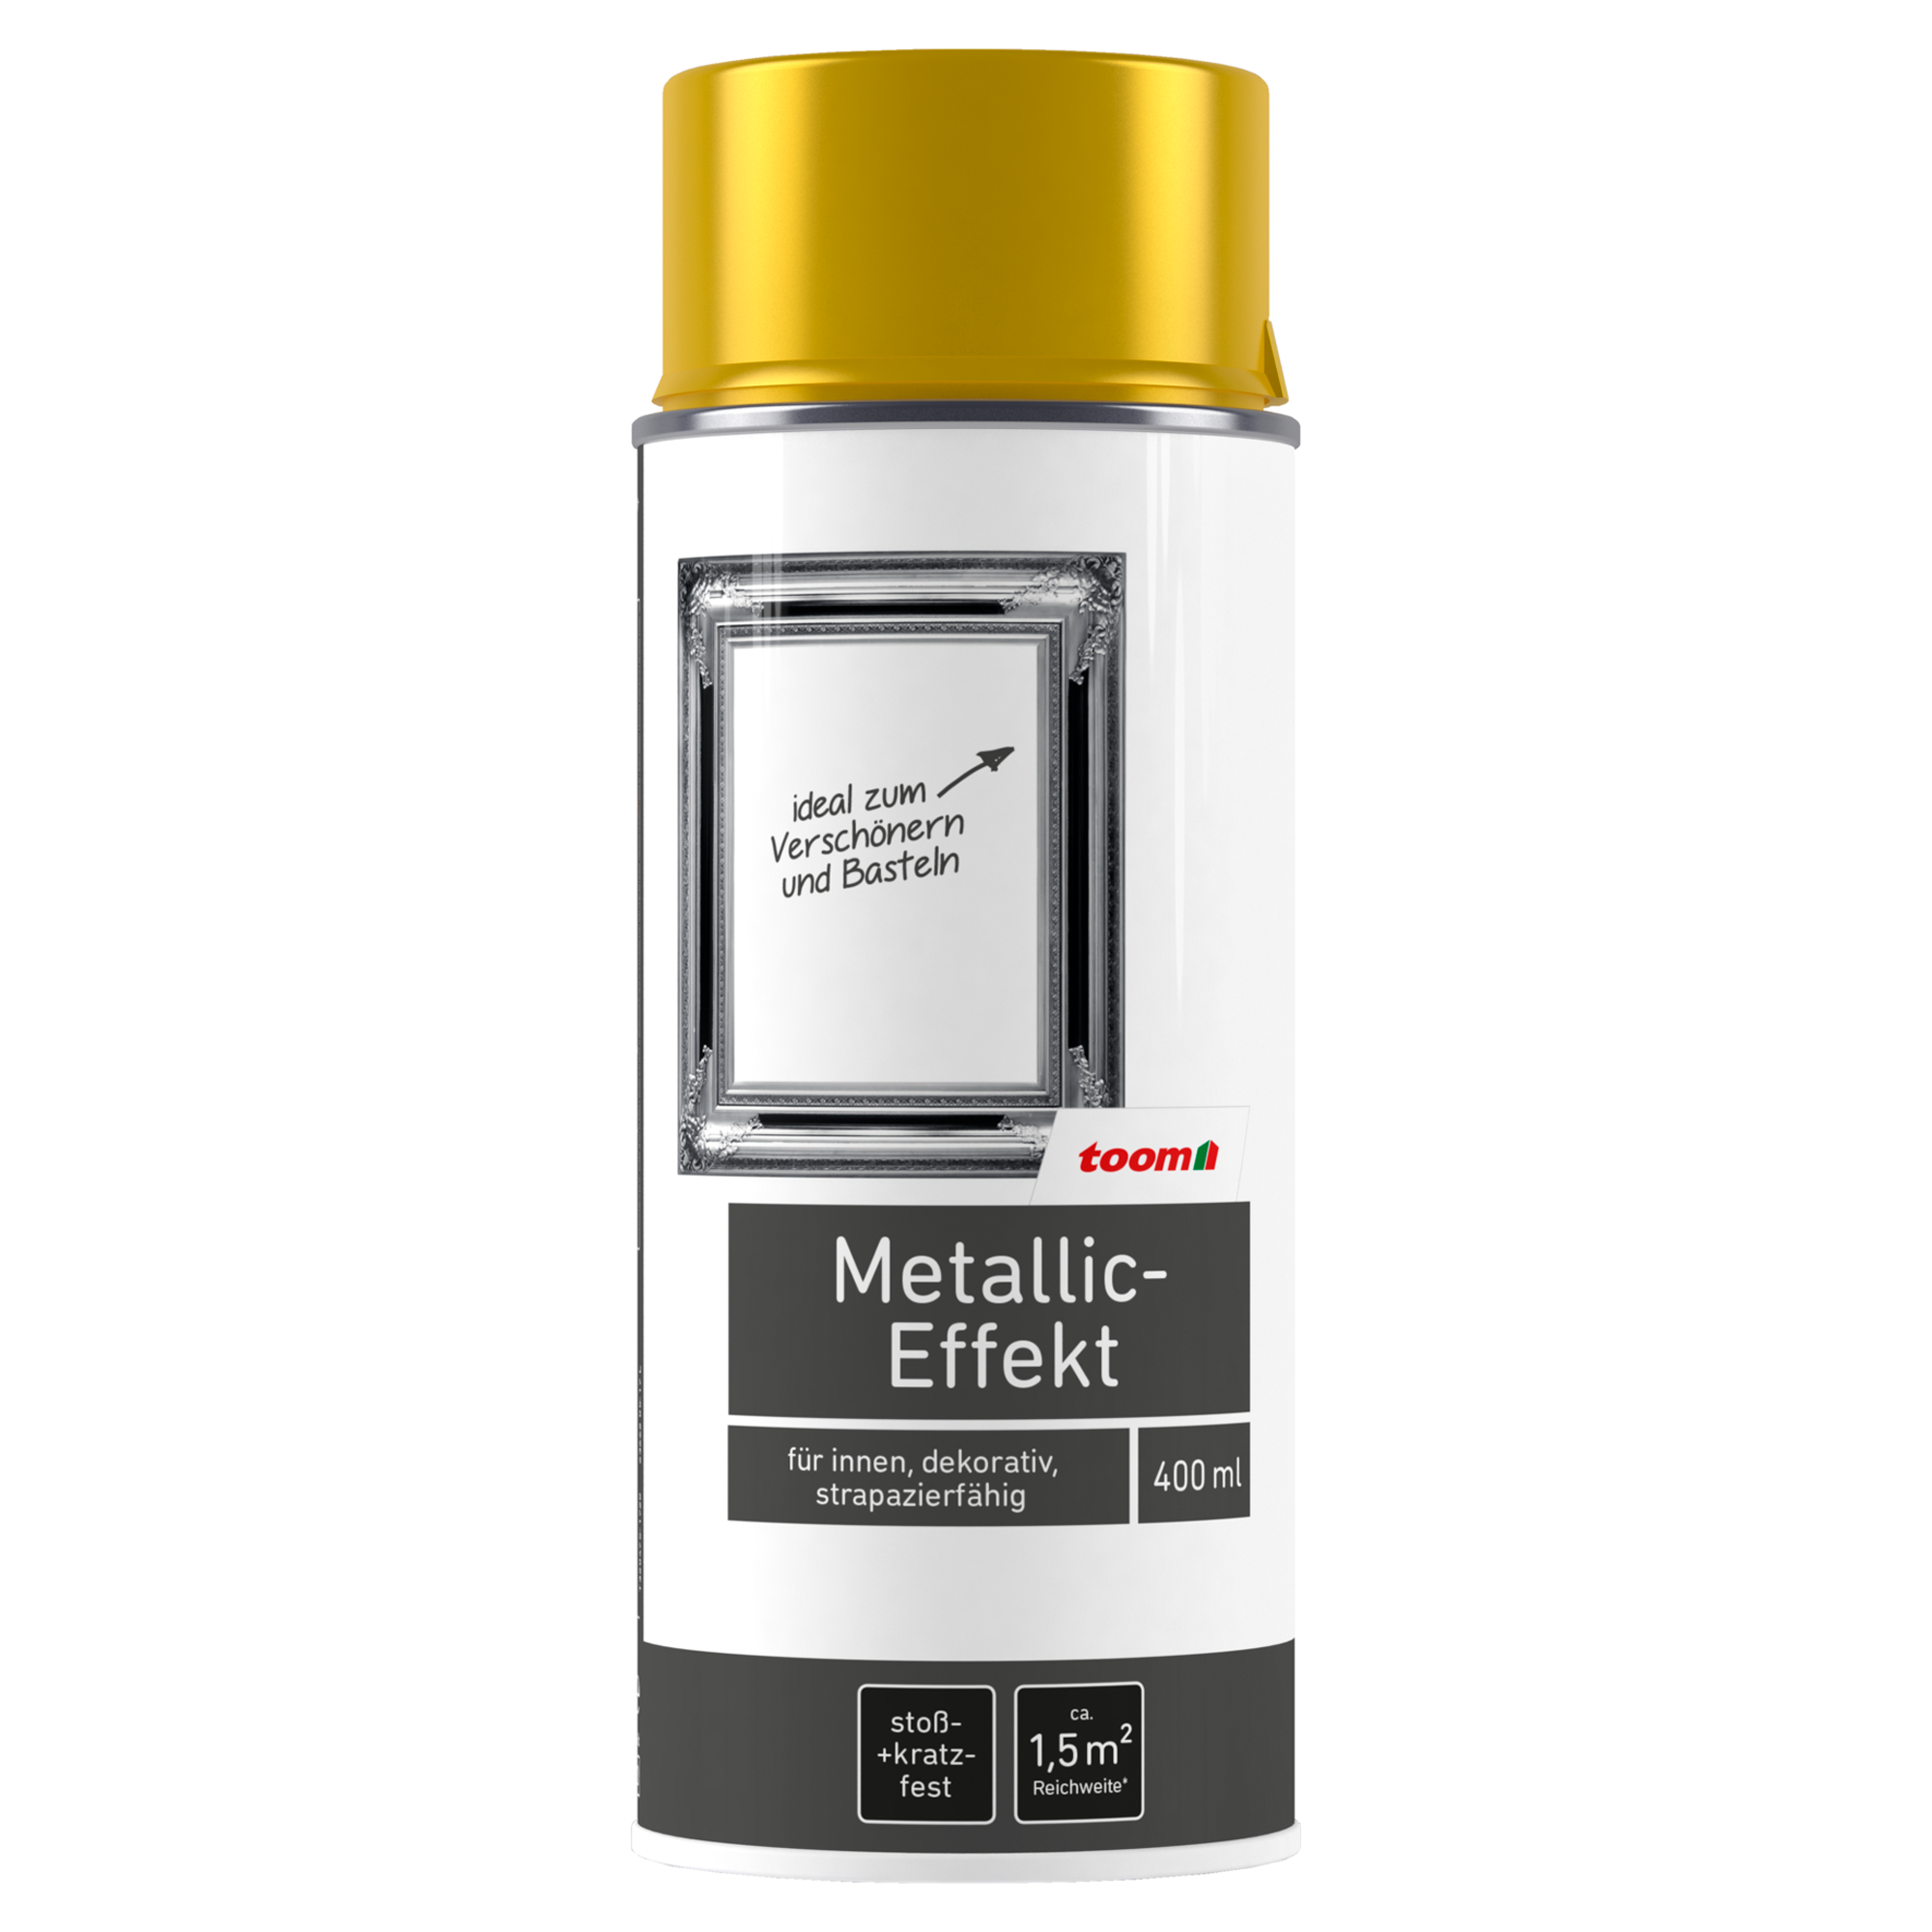 Metallic-Effekt-Sprühlack gold glänzend 400 ml + product picture